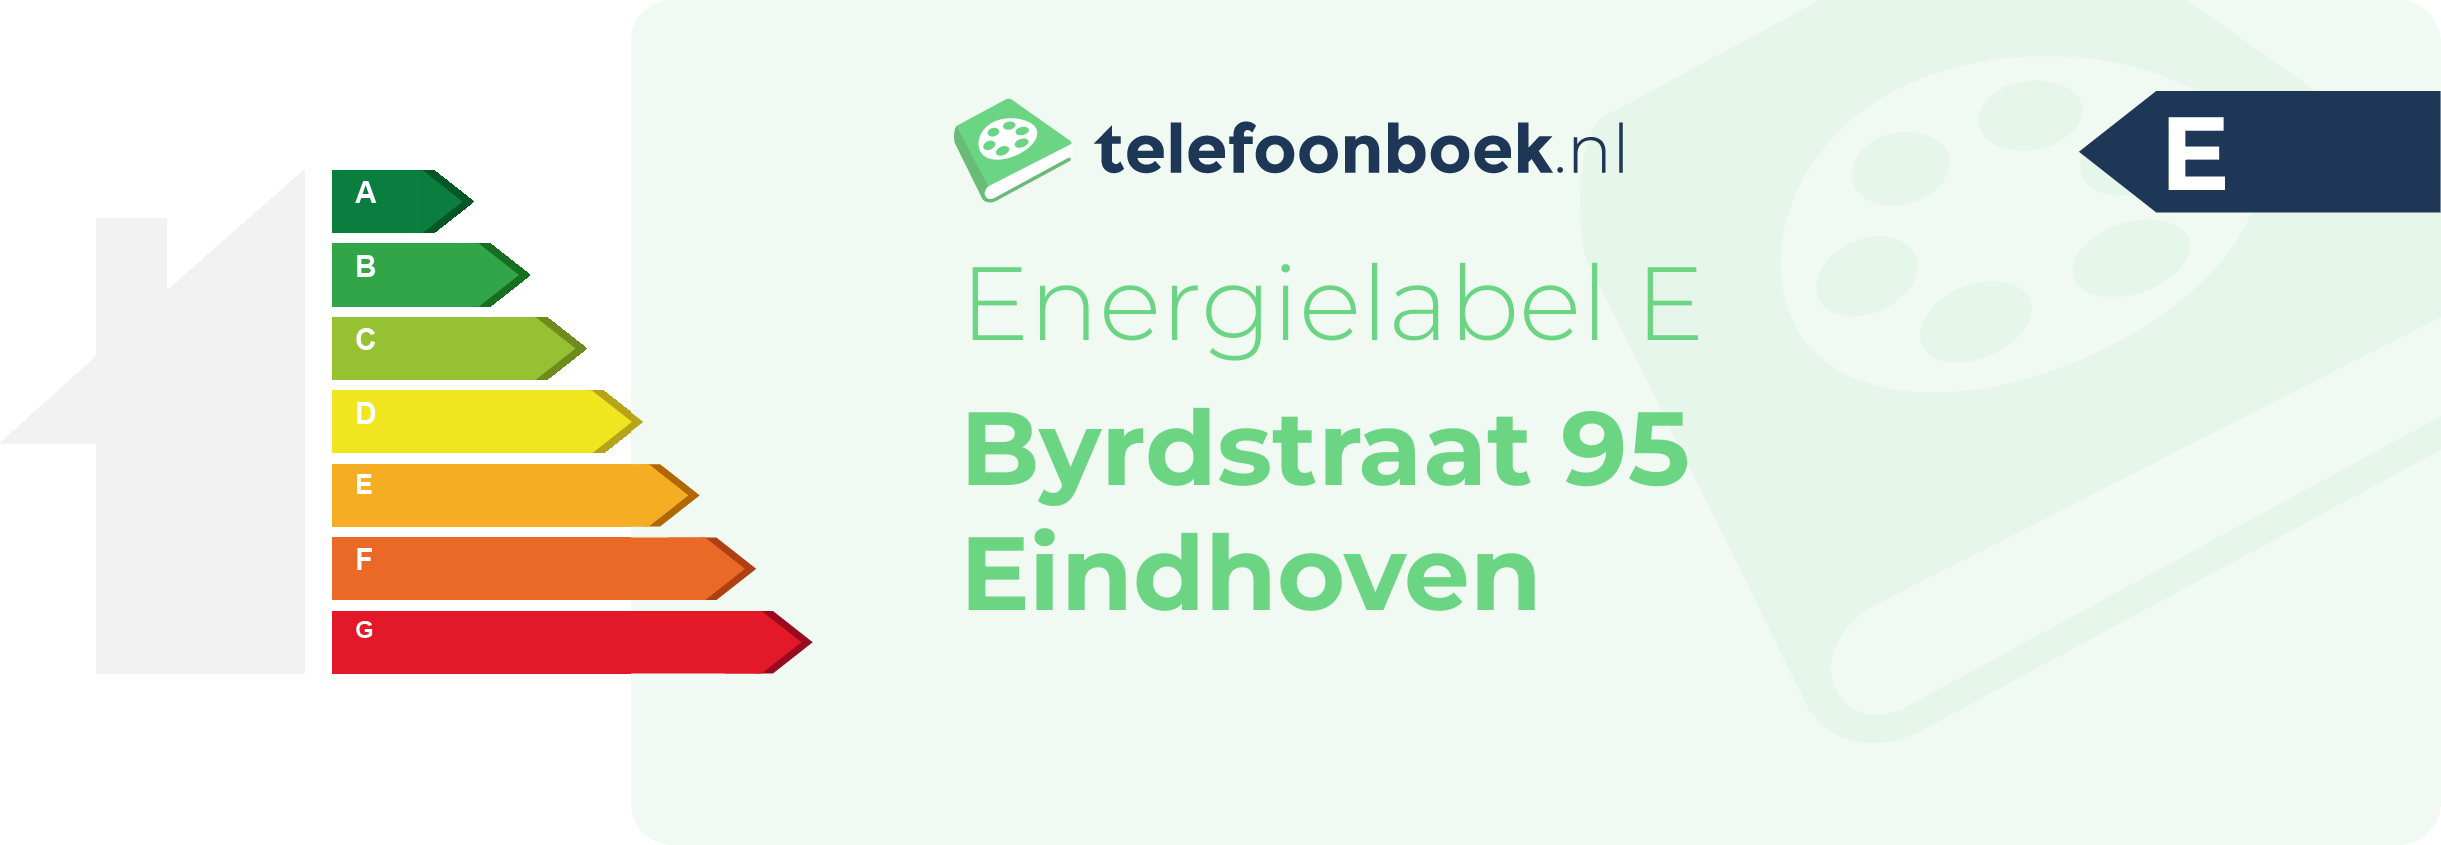 Energielabel Byrdstraat 95 Eindhoven